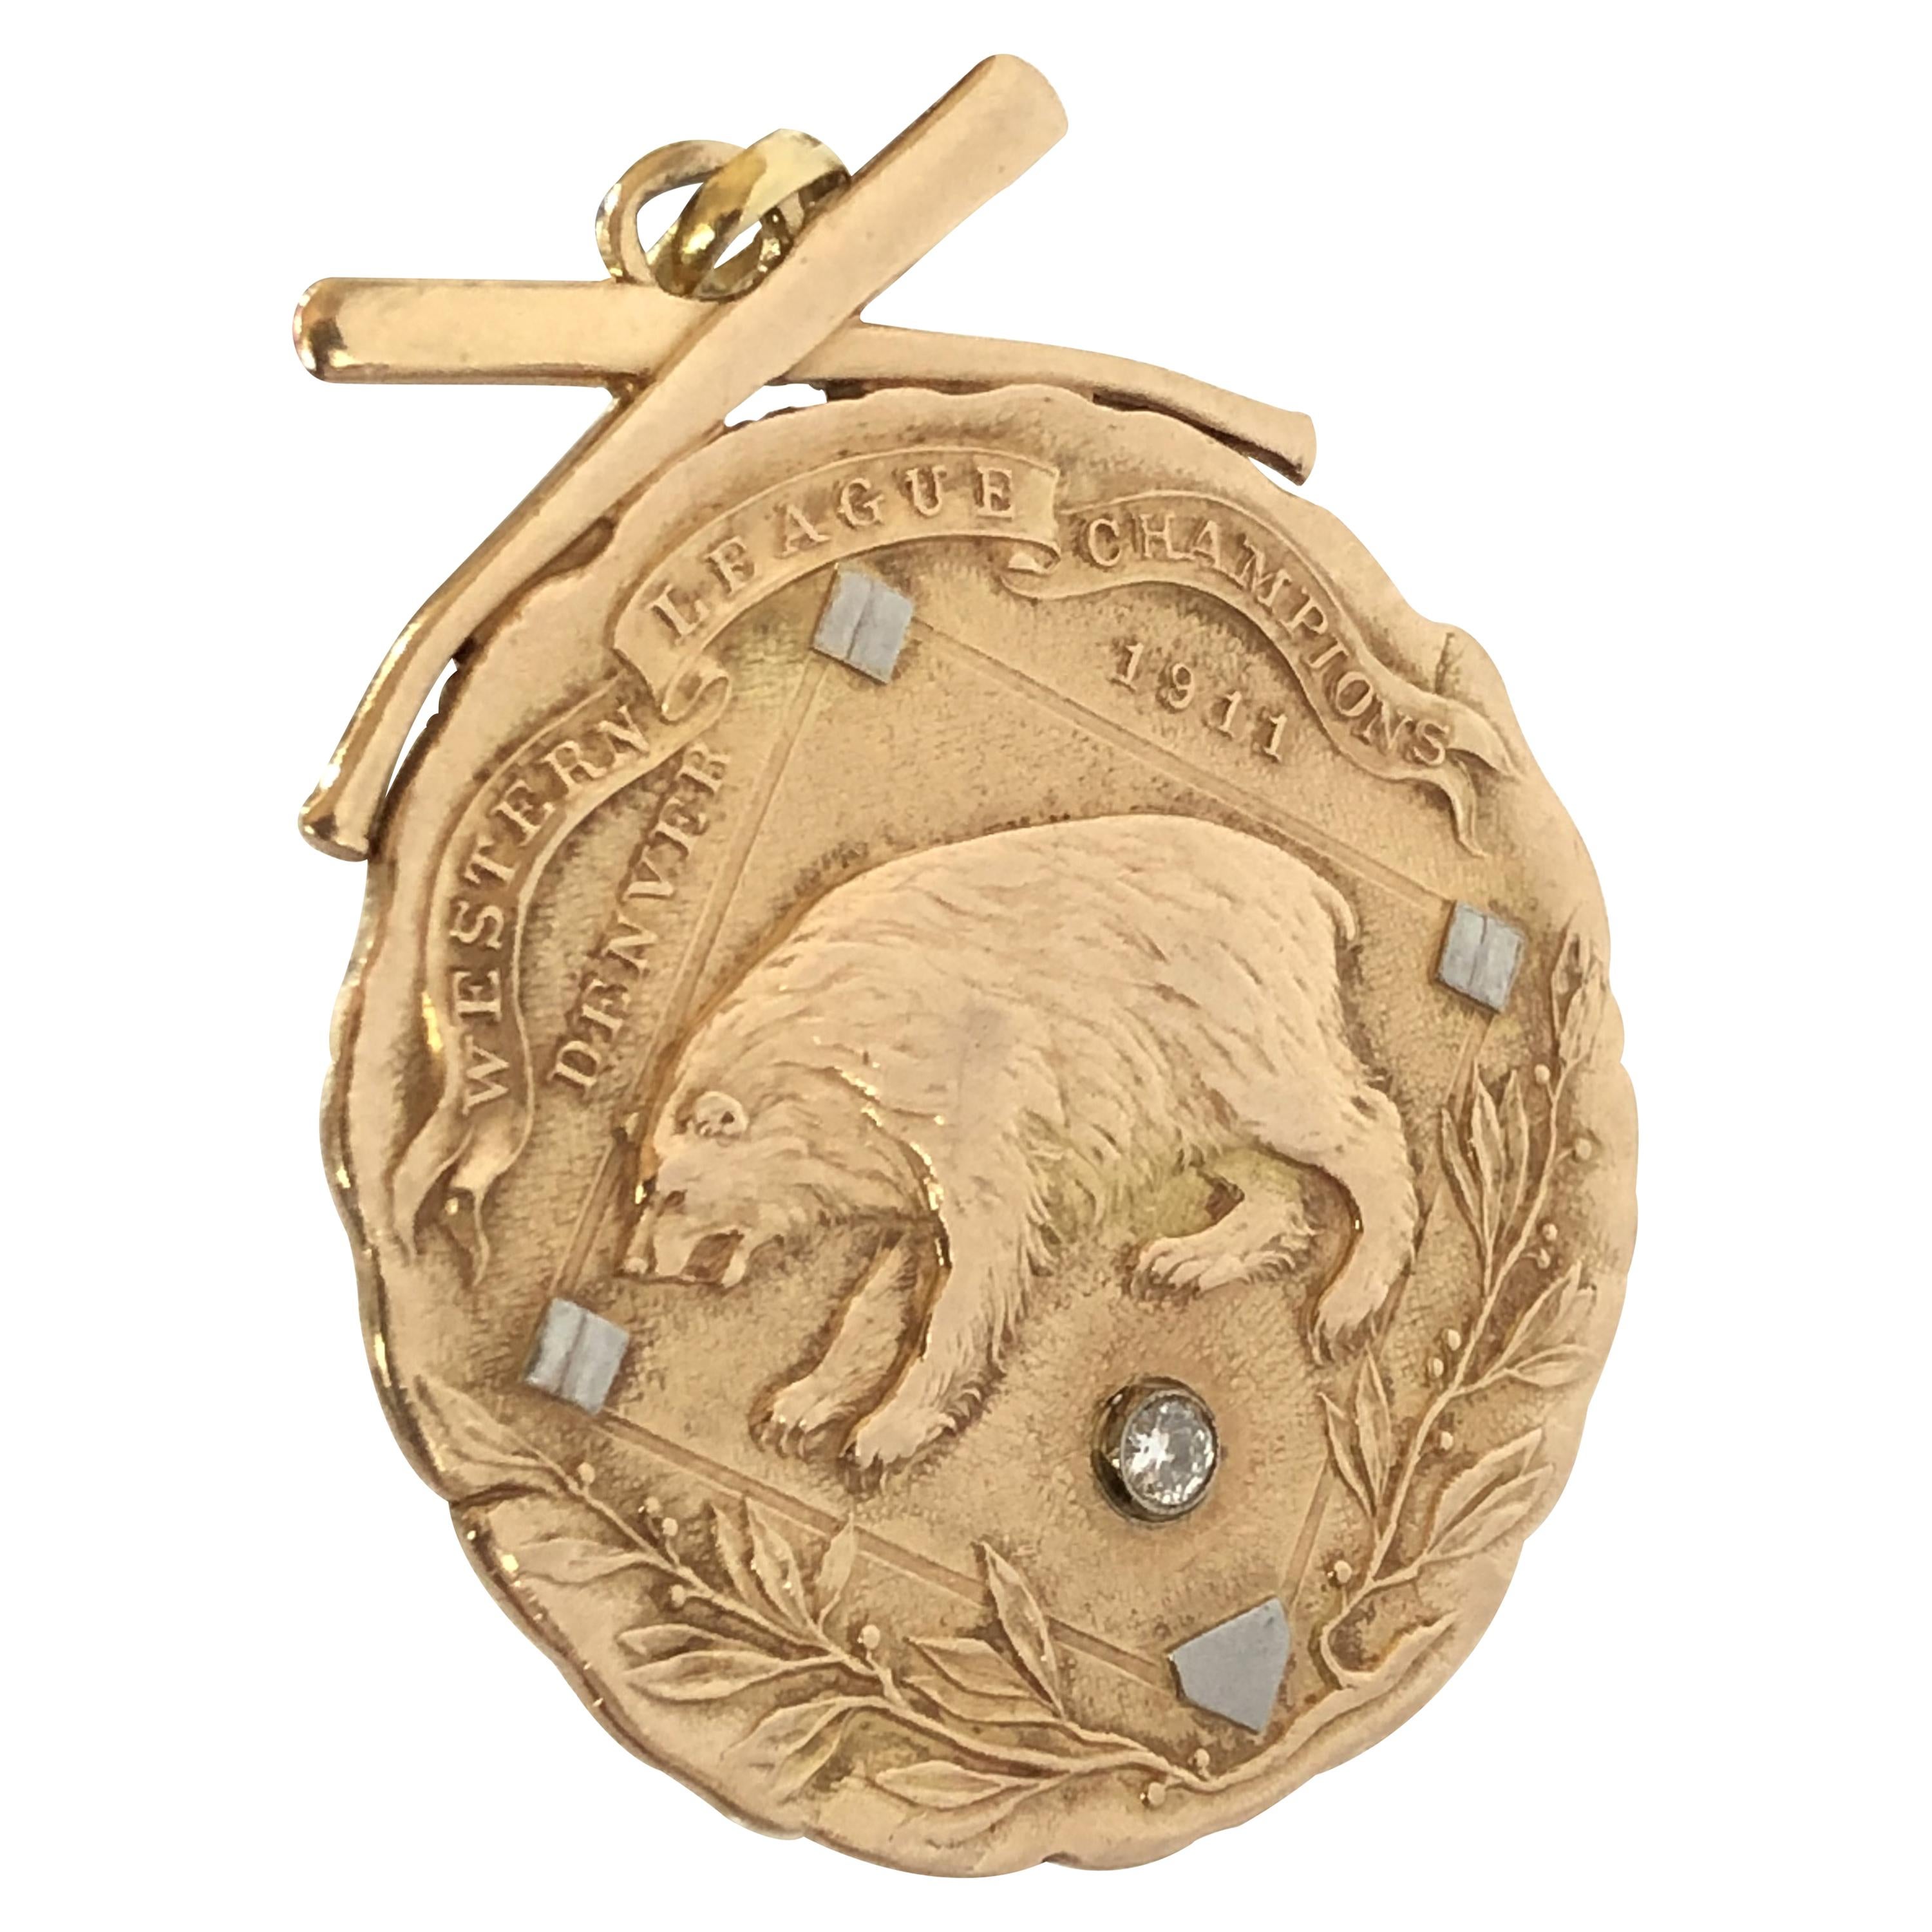 1911 Large Gold Important Baseball Presentation Medal from President Taft